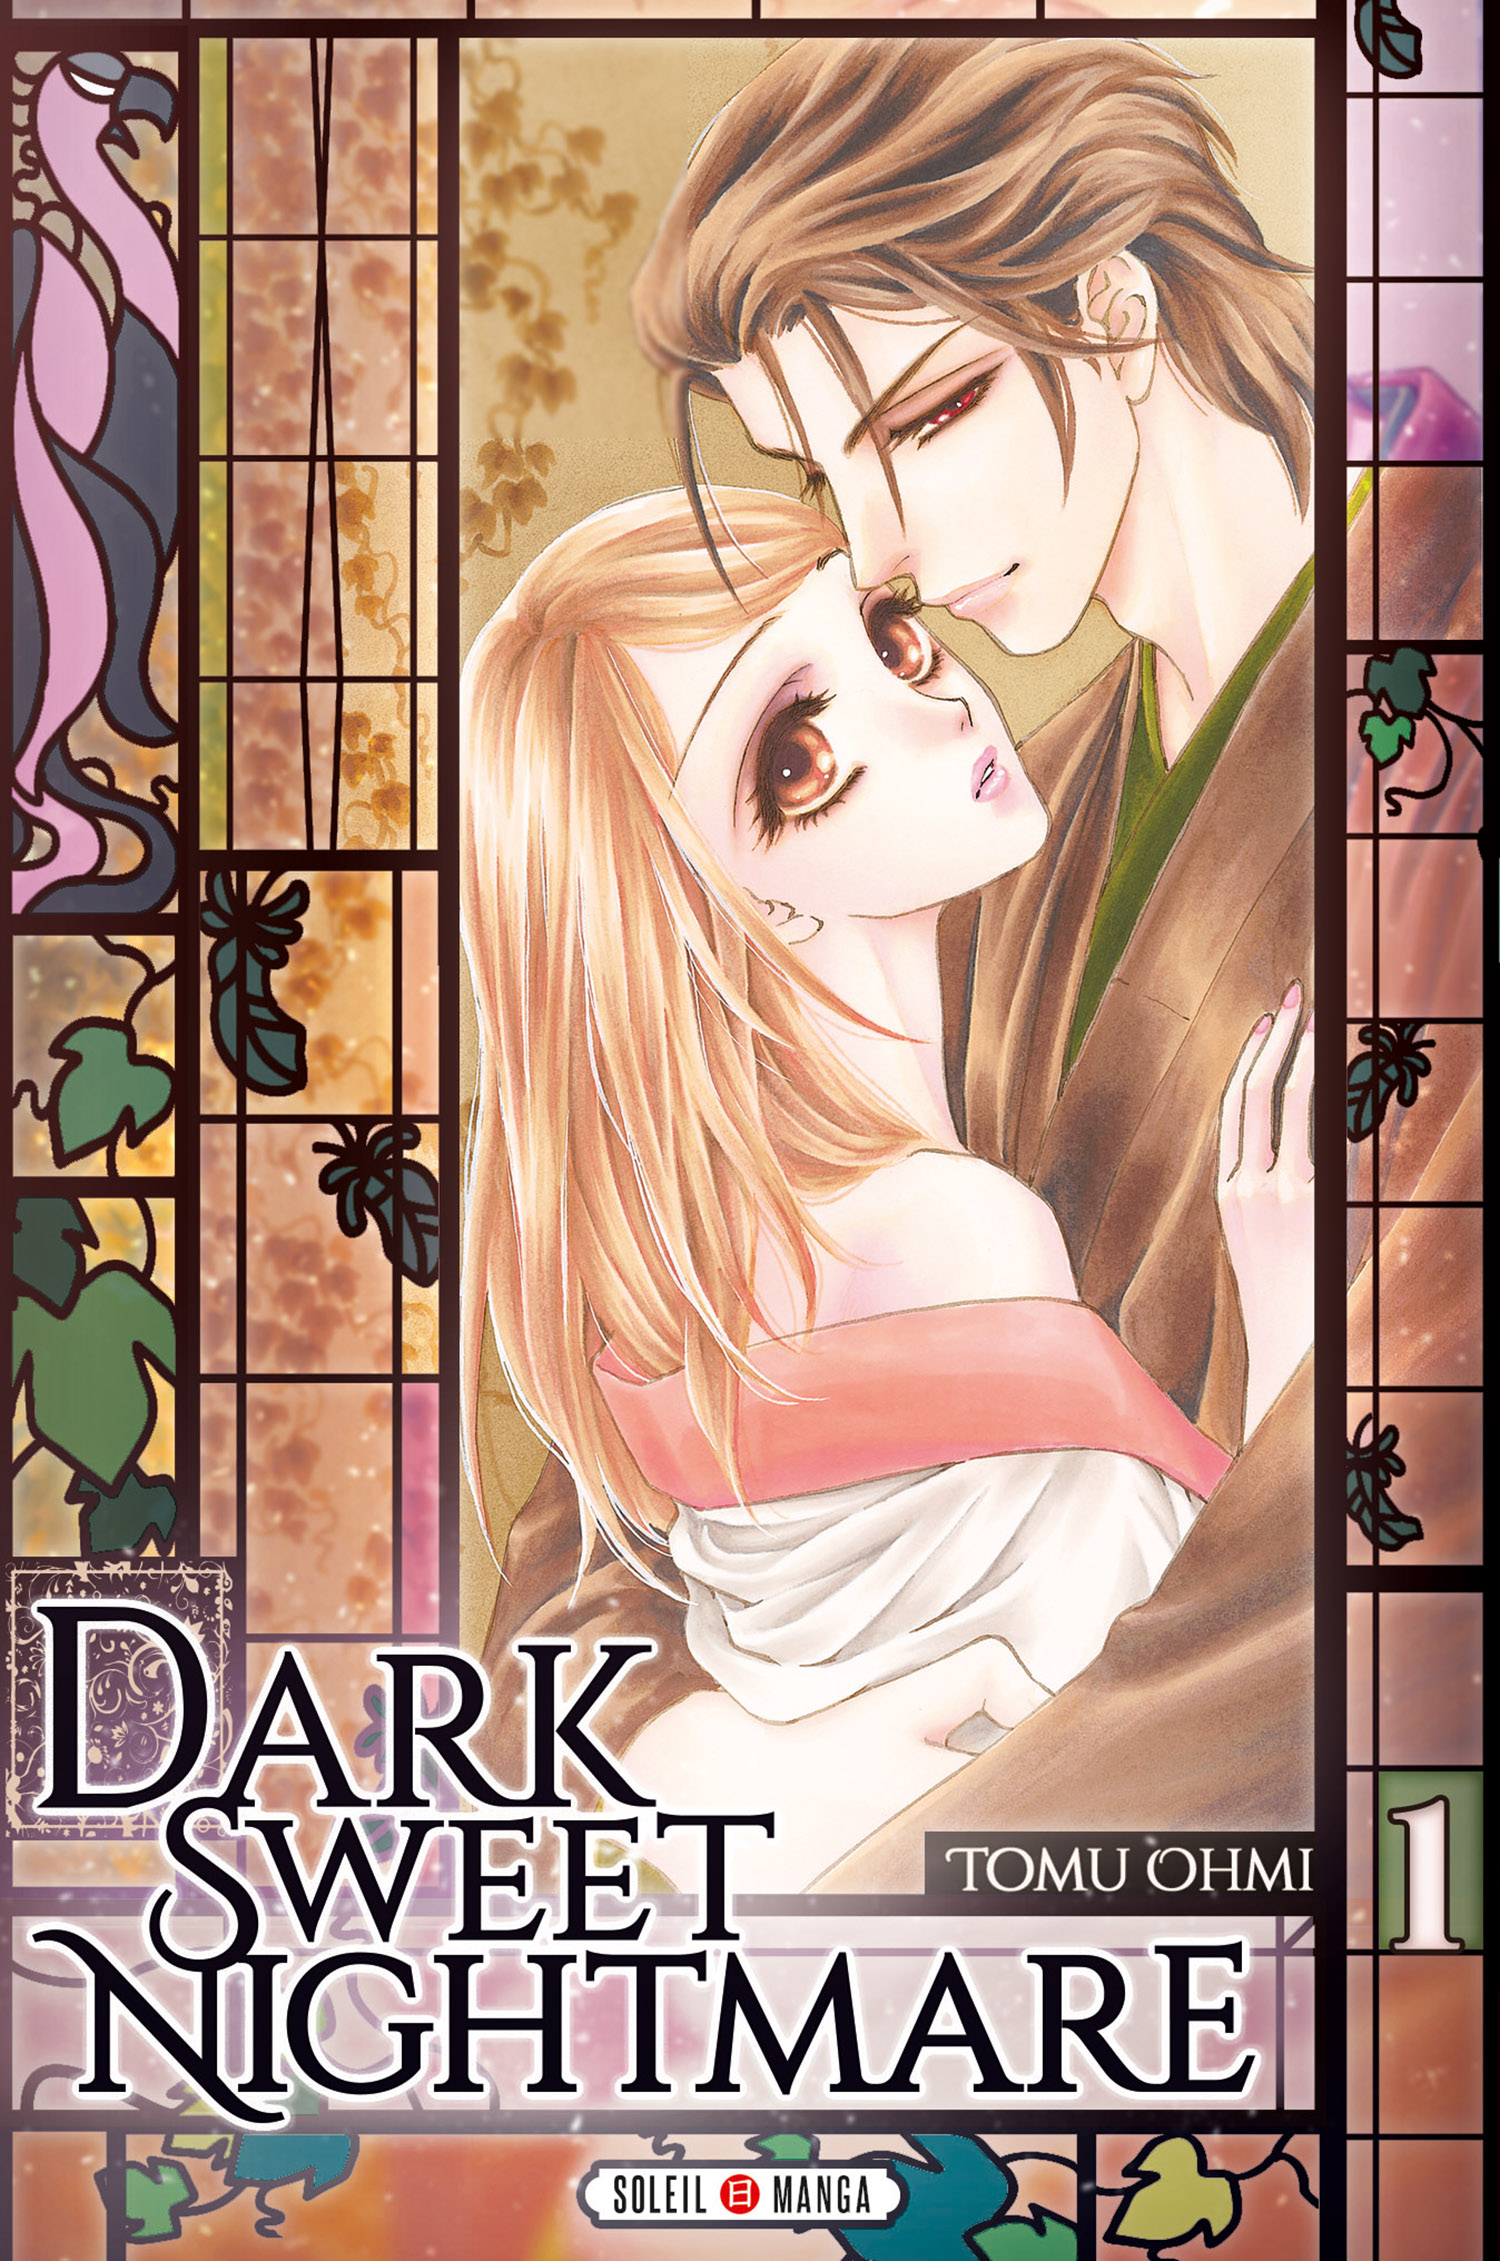 Dark sweet nightmare Manga